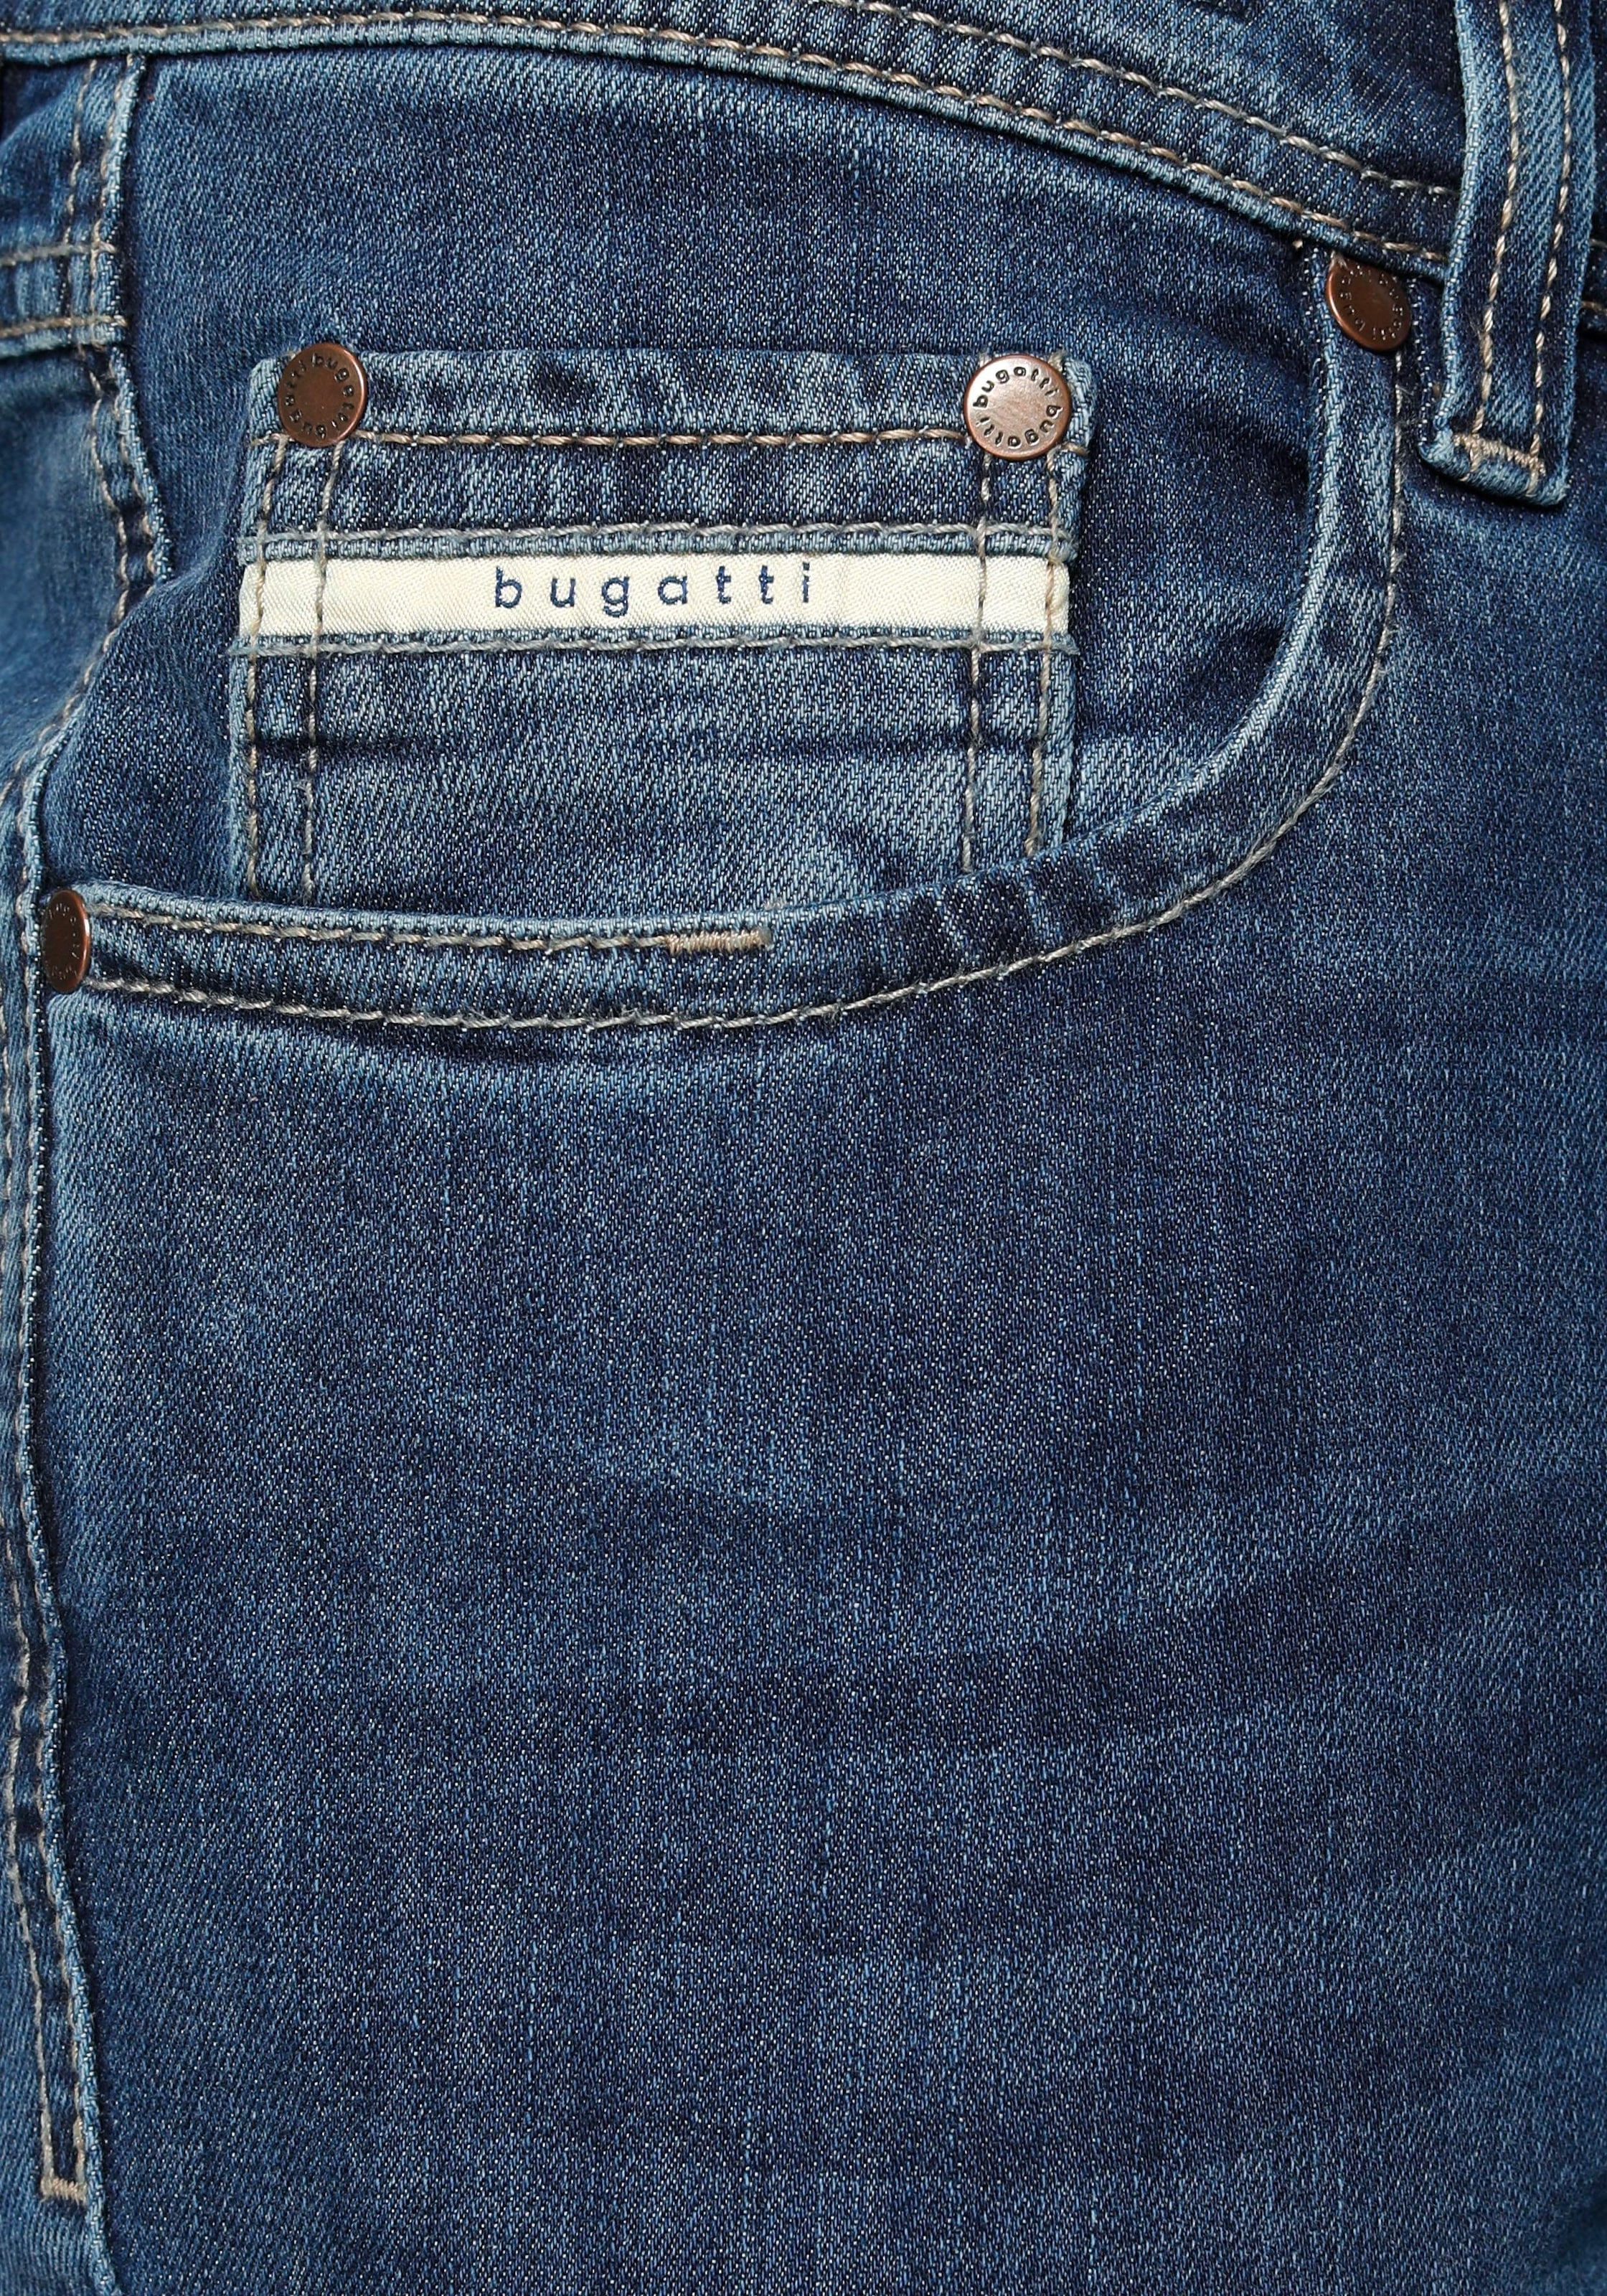 5-Pocket-Jeans, bugatti Zip-fly kaufen Gürtelschlaufenbund günstig mit